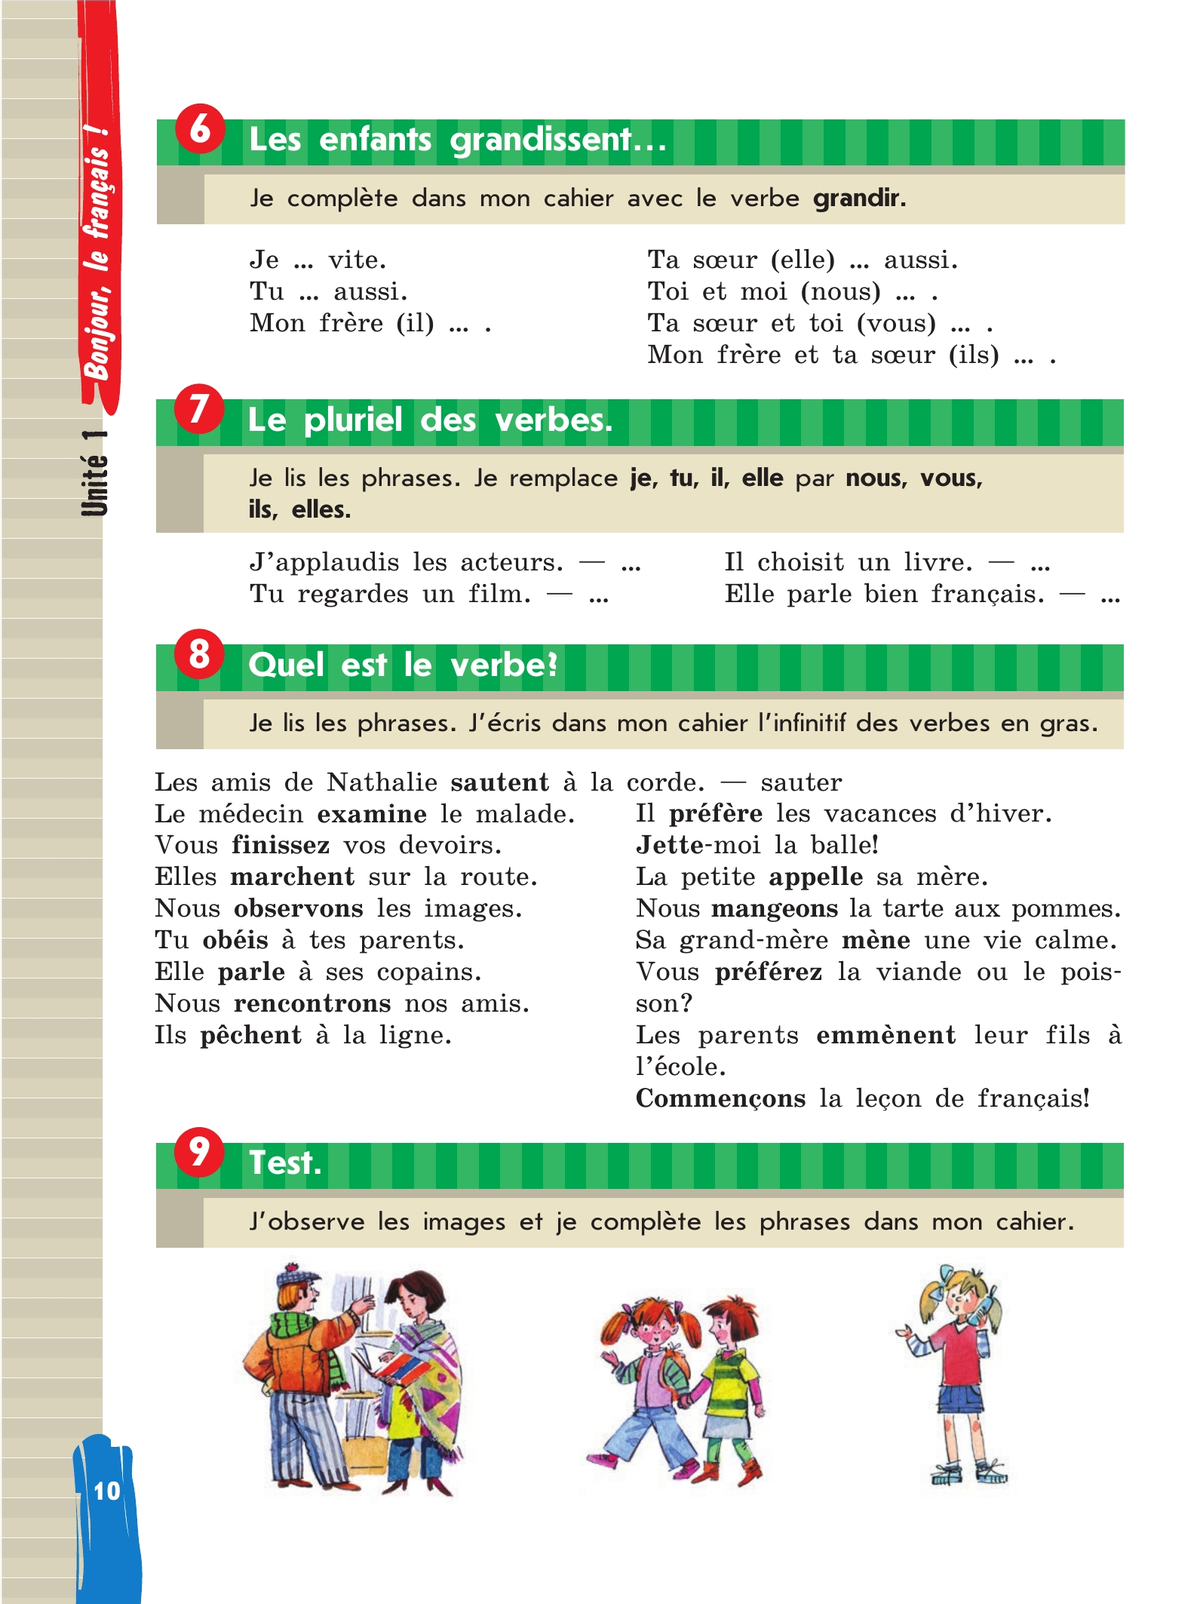 Французский язык. Второй иностранный язык. 5 класс. Учебник. В 2 ч. Часть 1 8